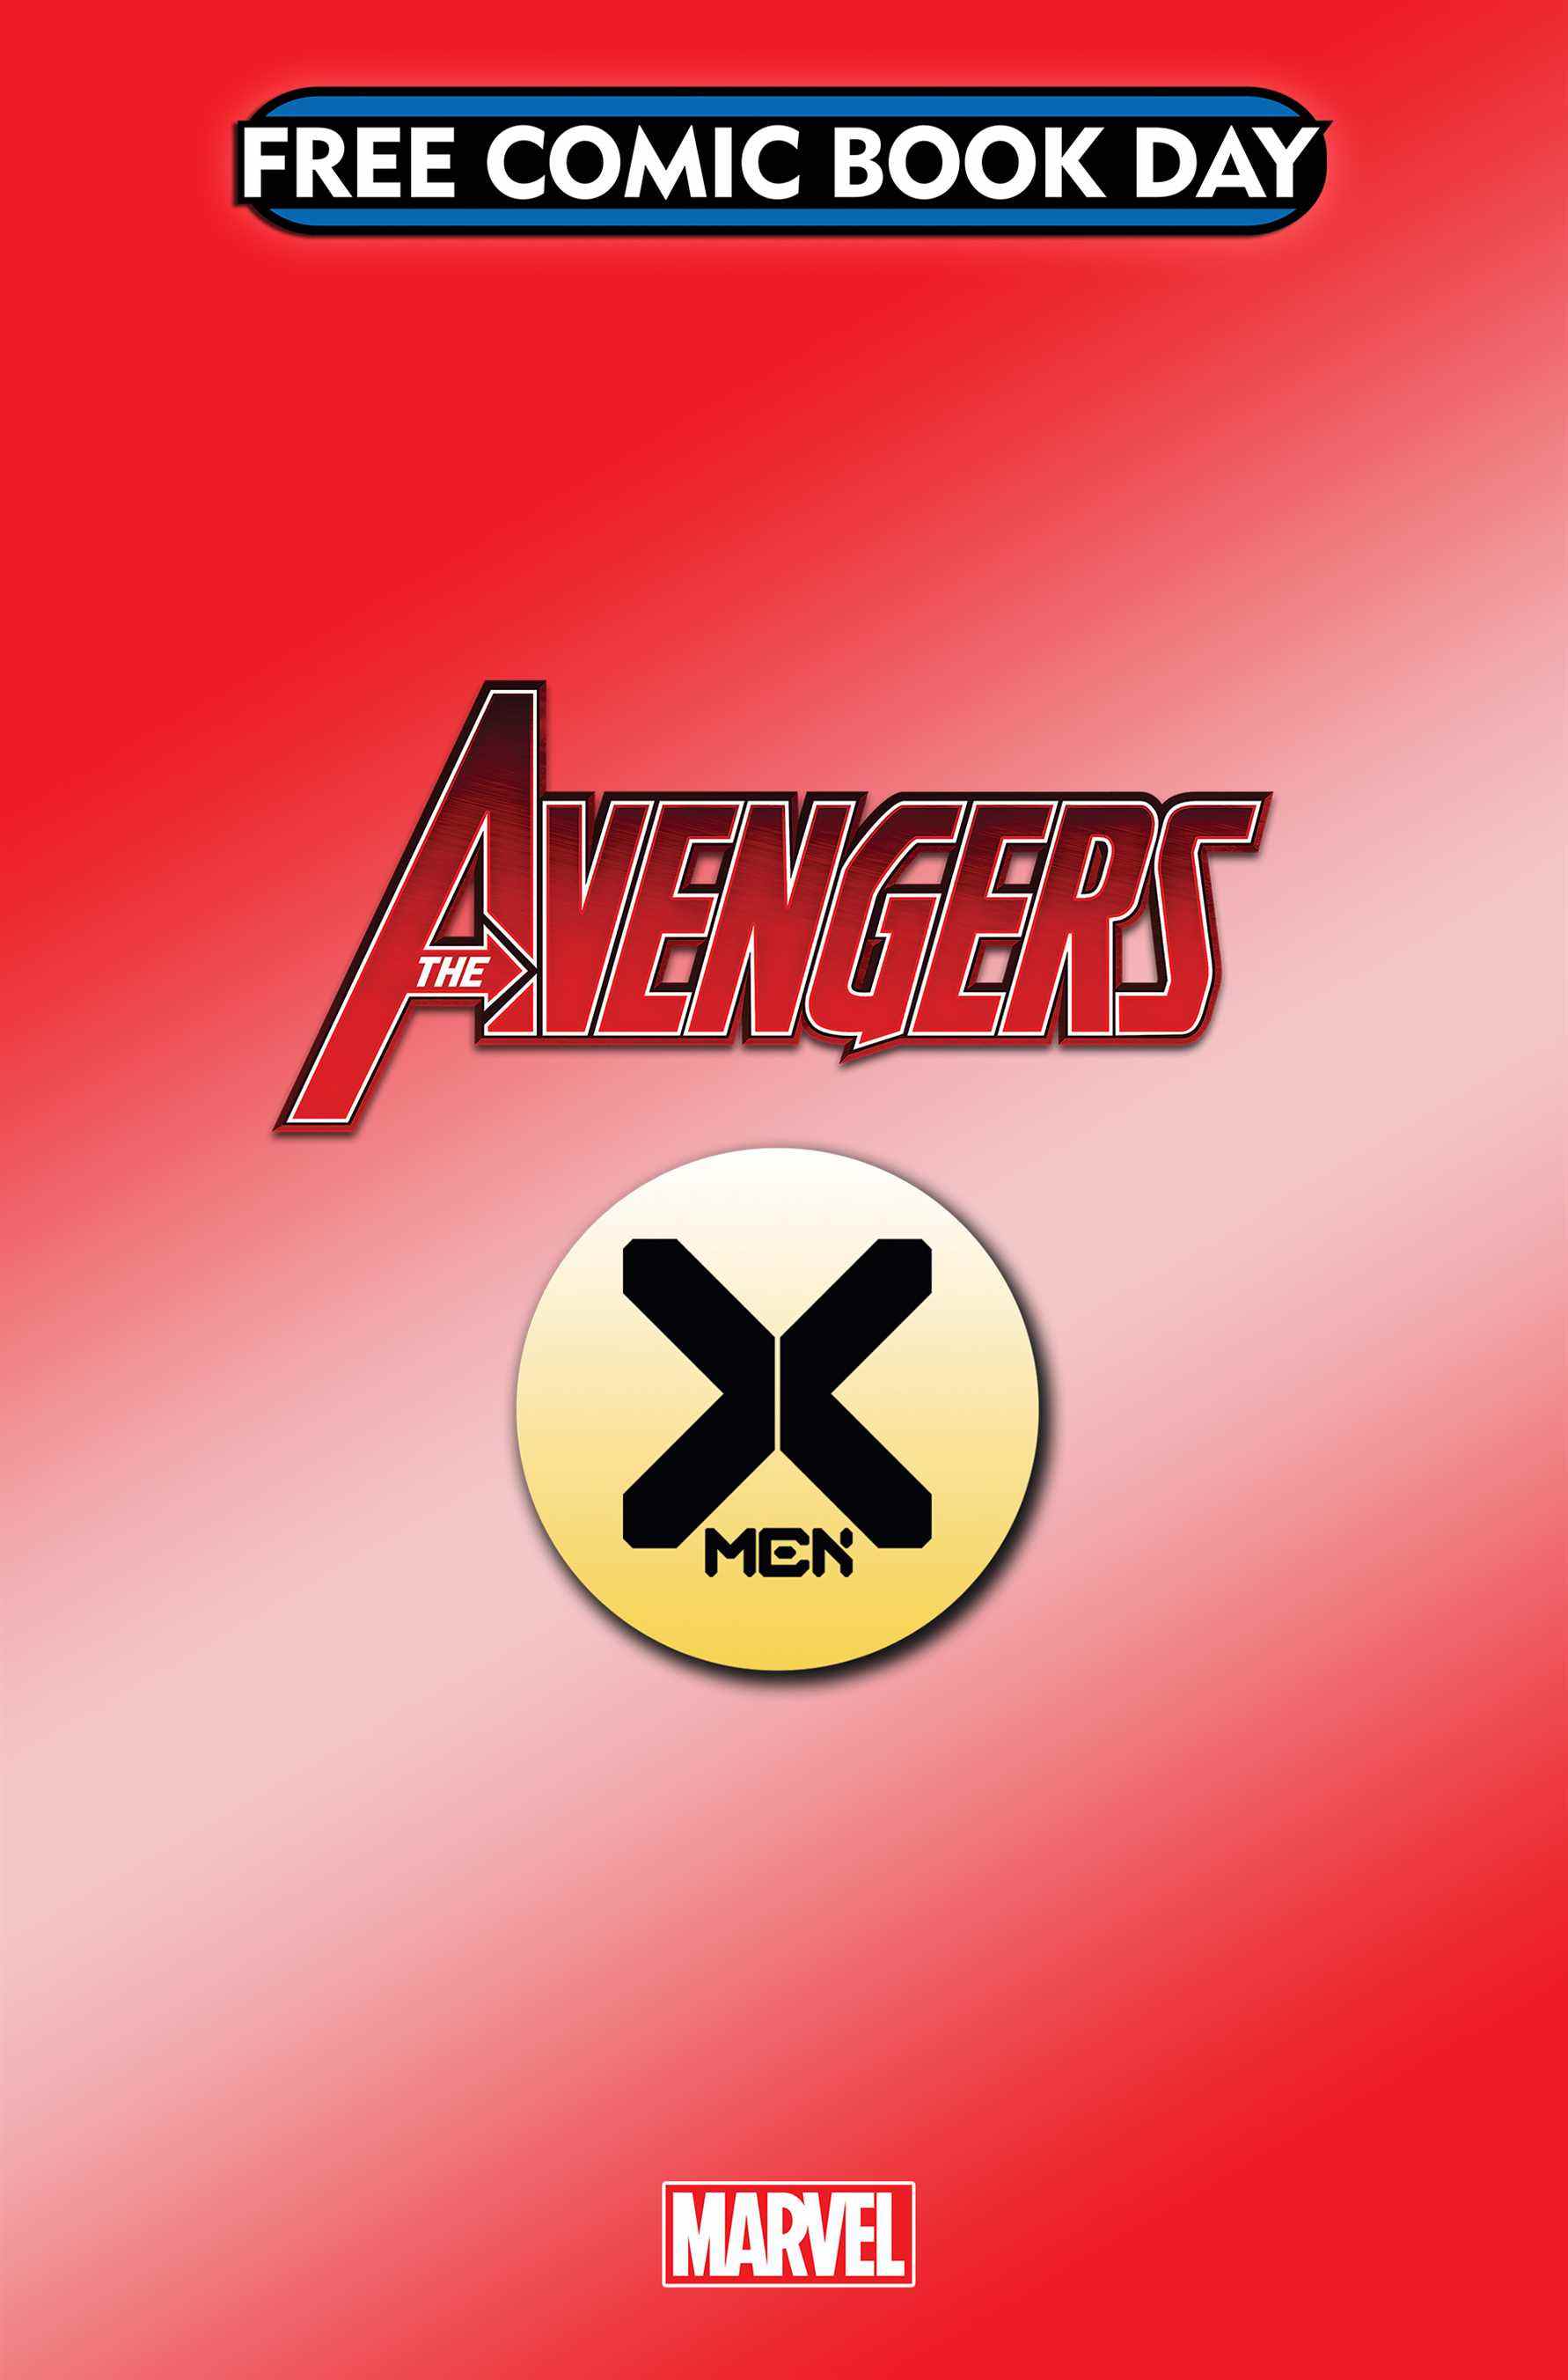 Couverture temporaire Avengers/X-Men #1